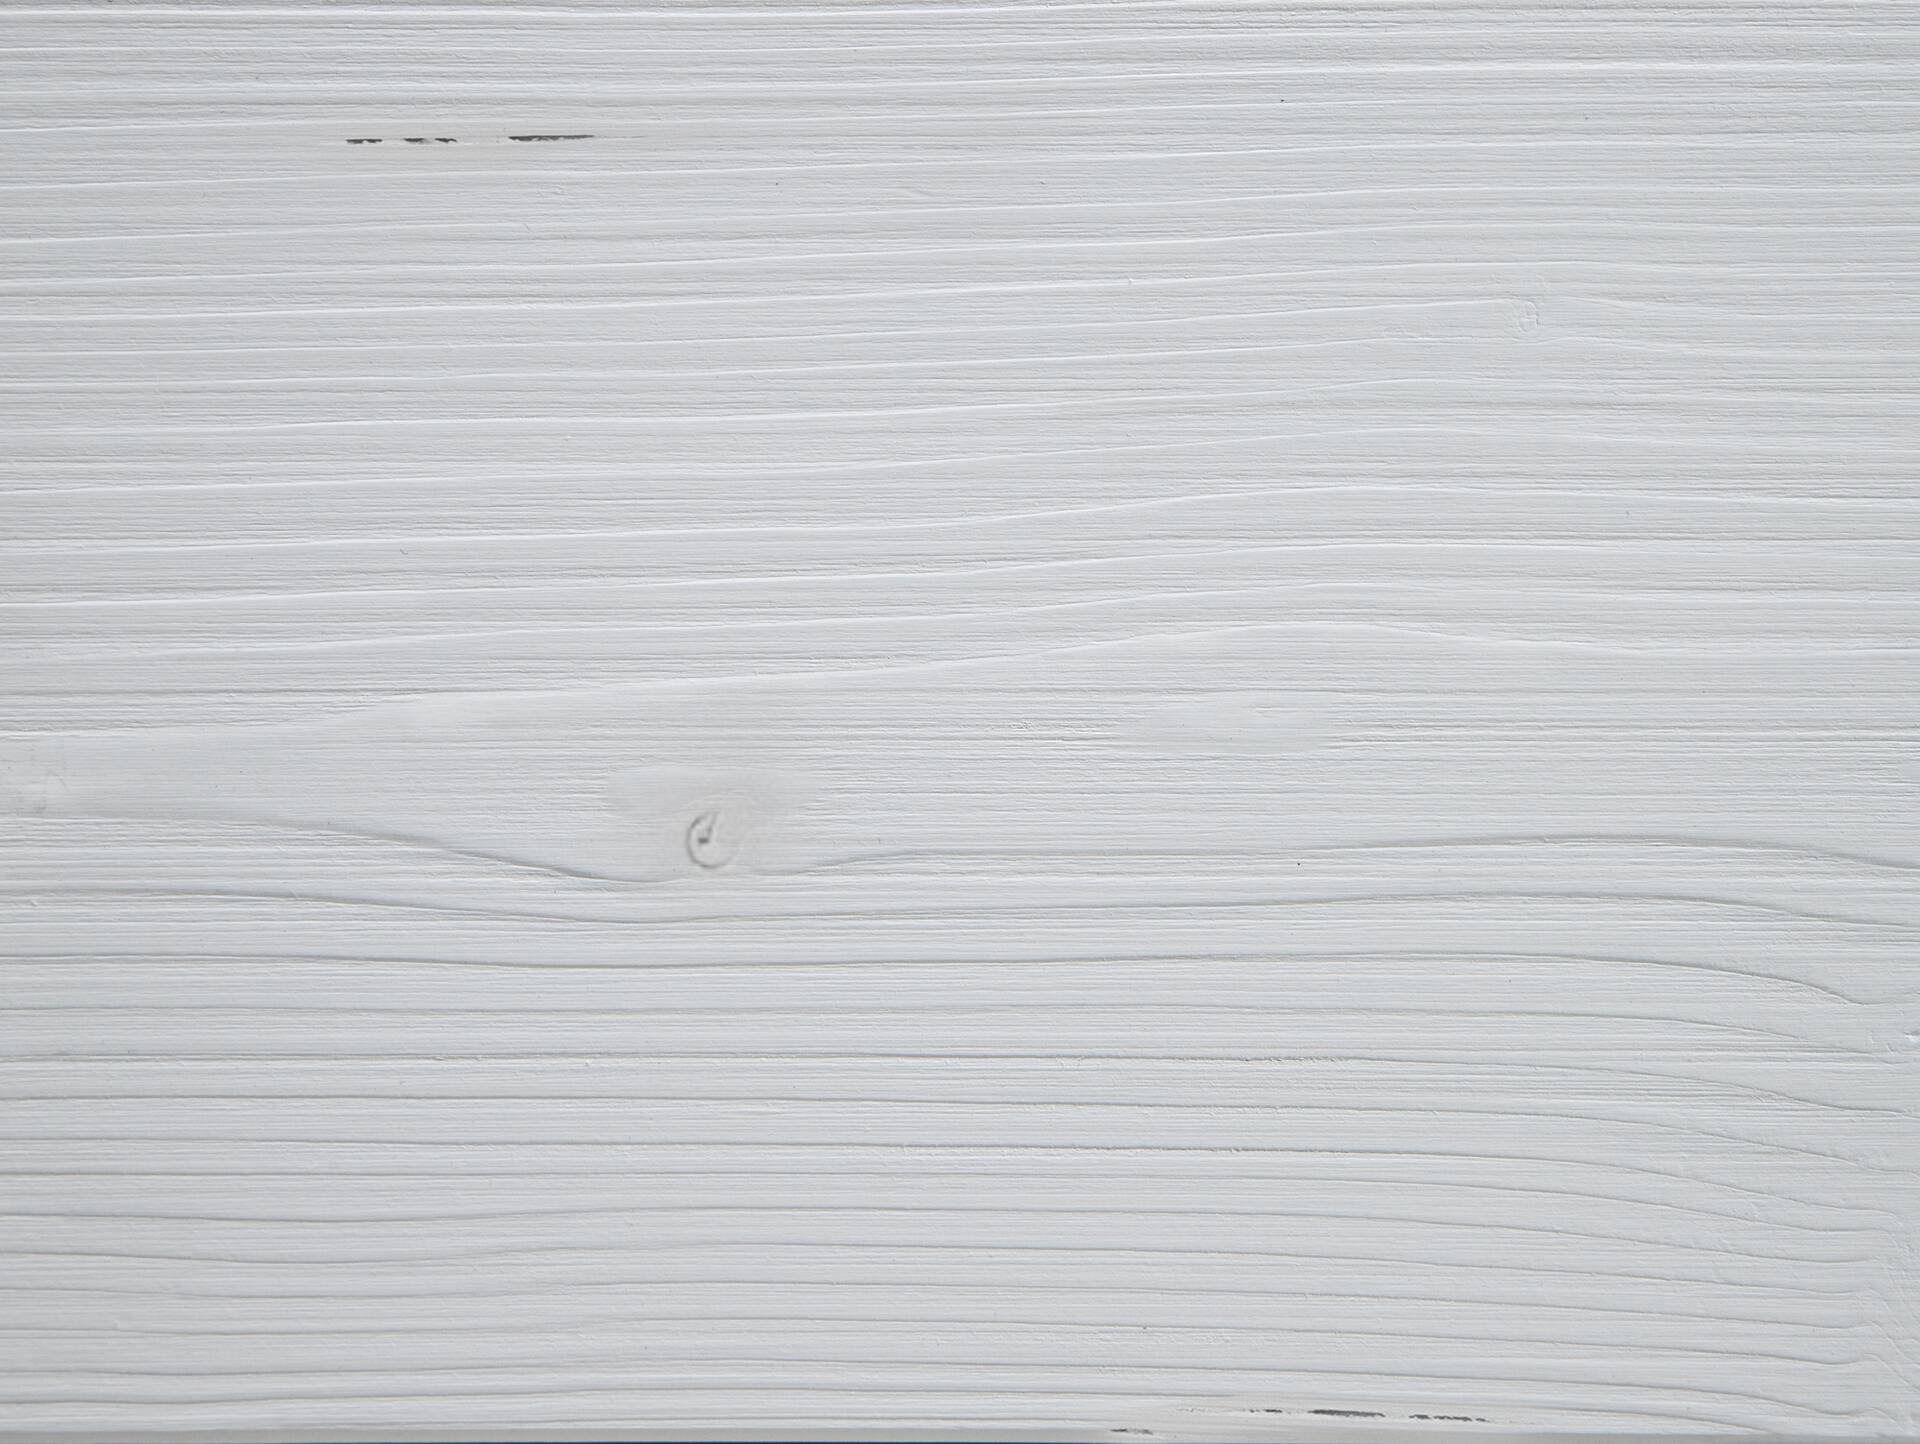 LUKY Bett Metallfuß, mit Polsterkopfteil, Material Massivholz, Fichte massiv 200 x 220 cm | weiss | Kunstleder Schwarz